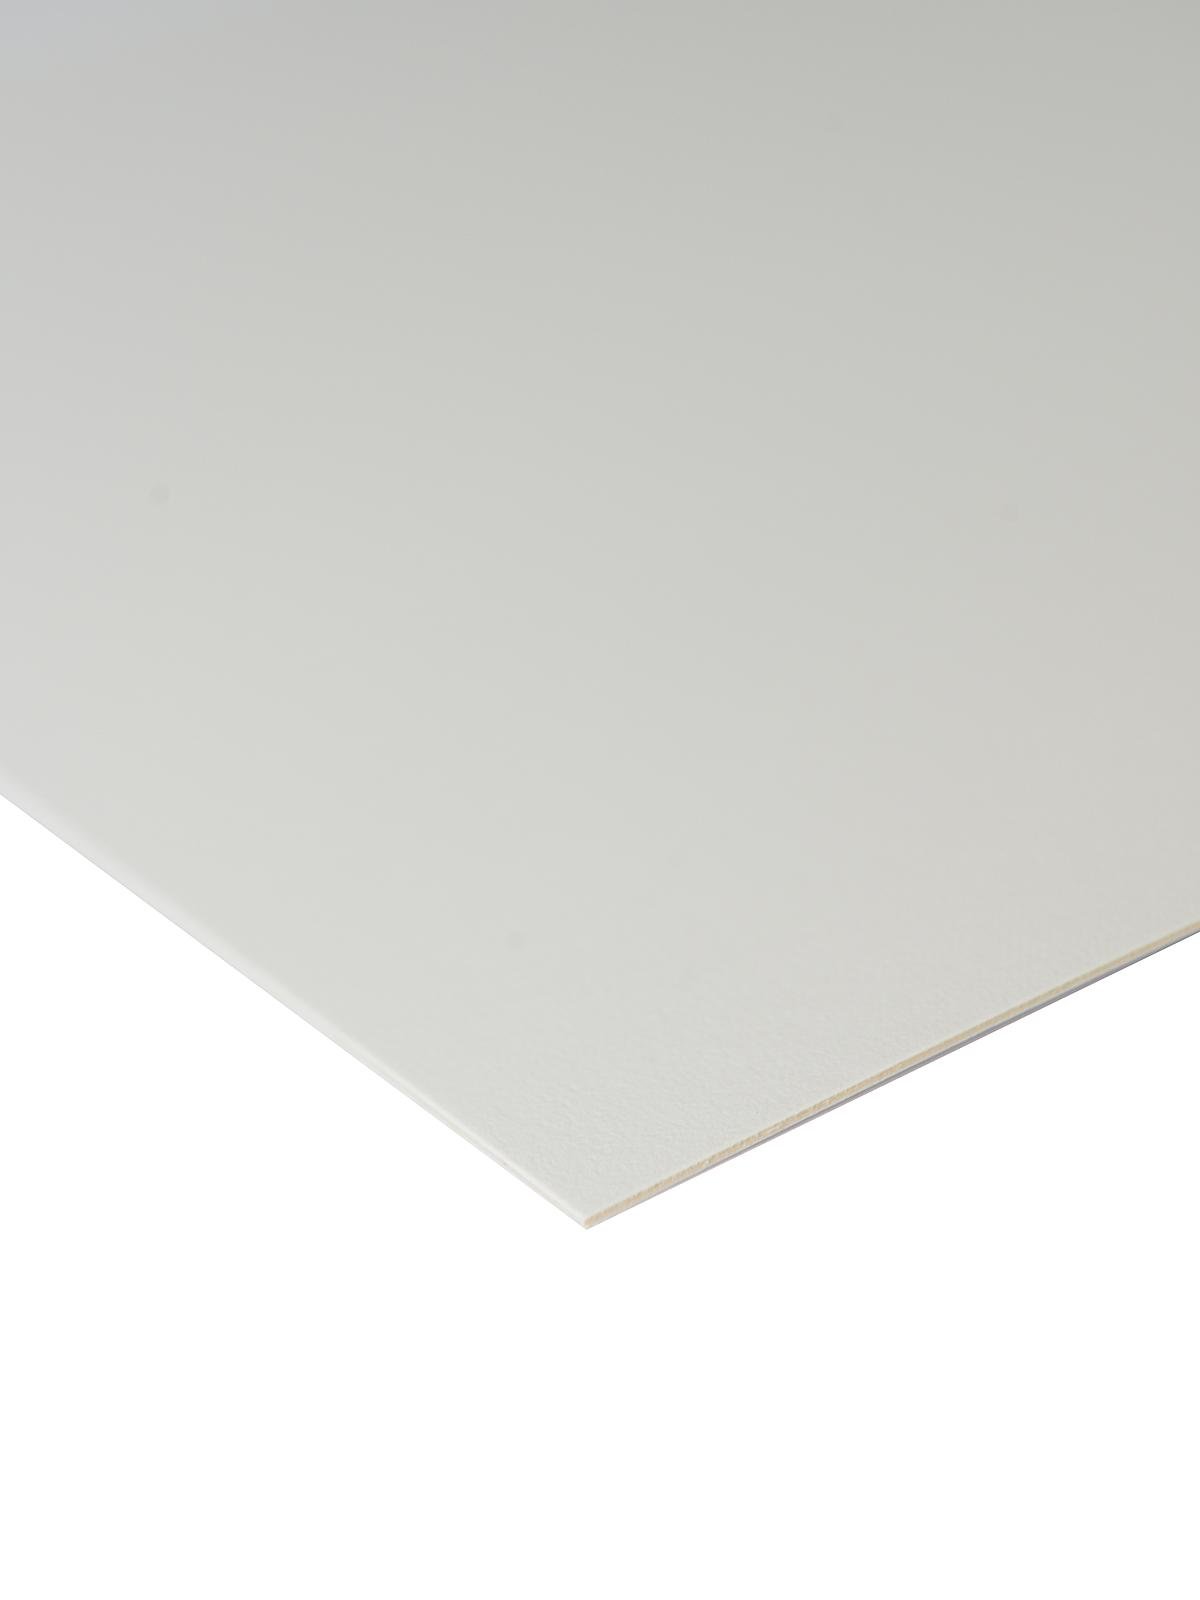 Crescent Watercolor Board 3 Pkg 5x7 White